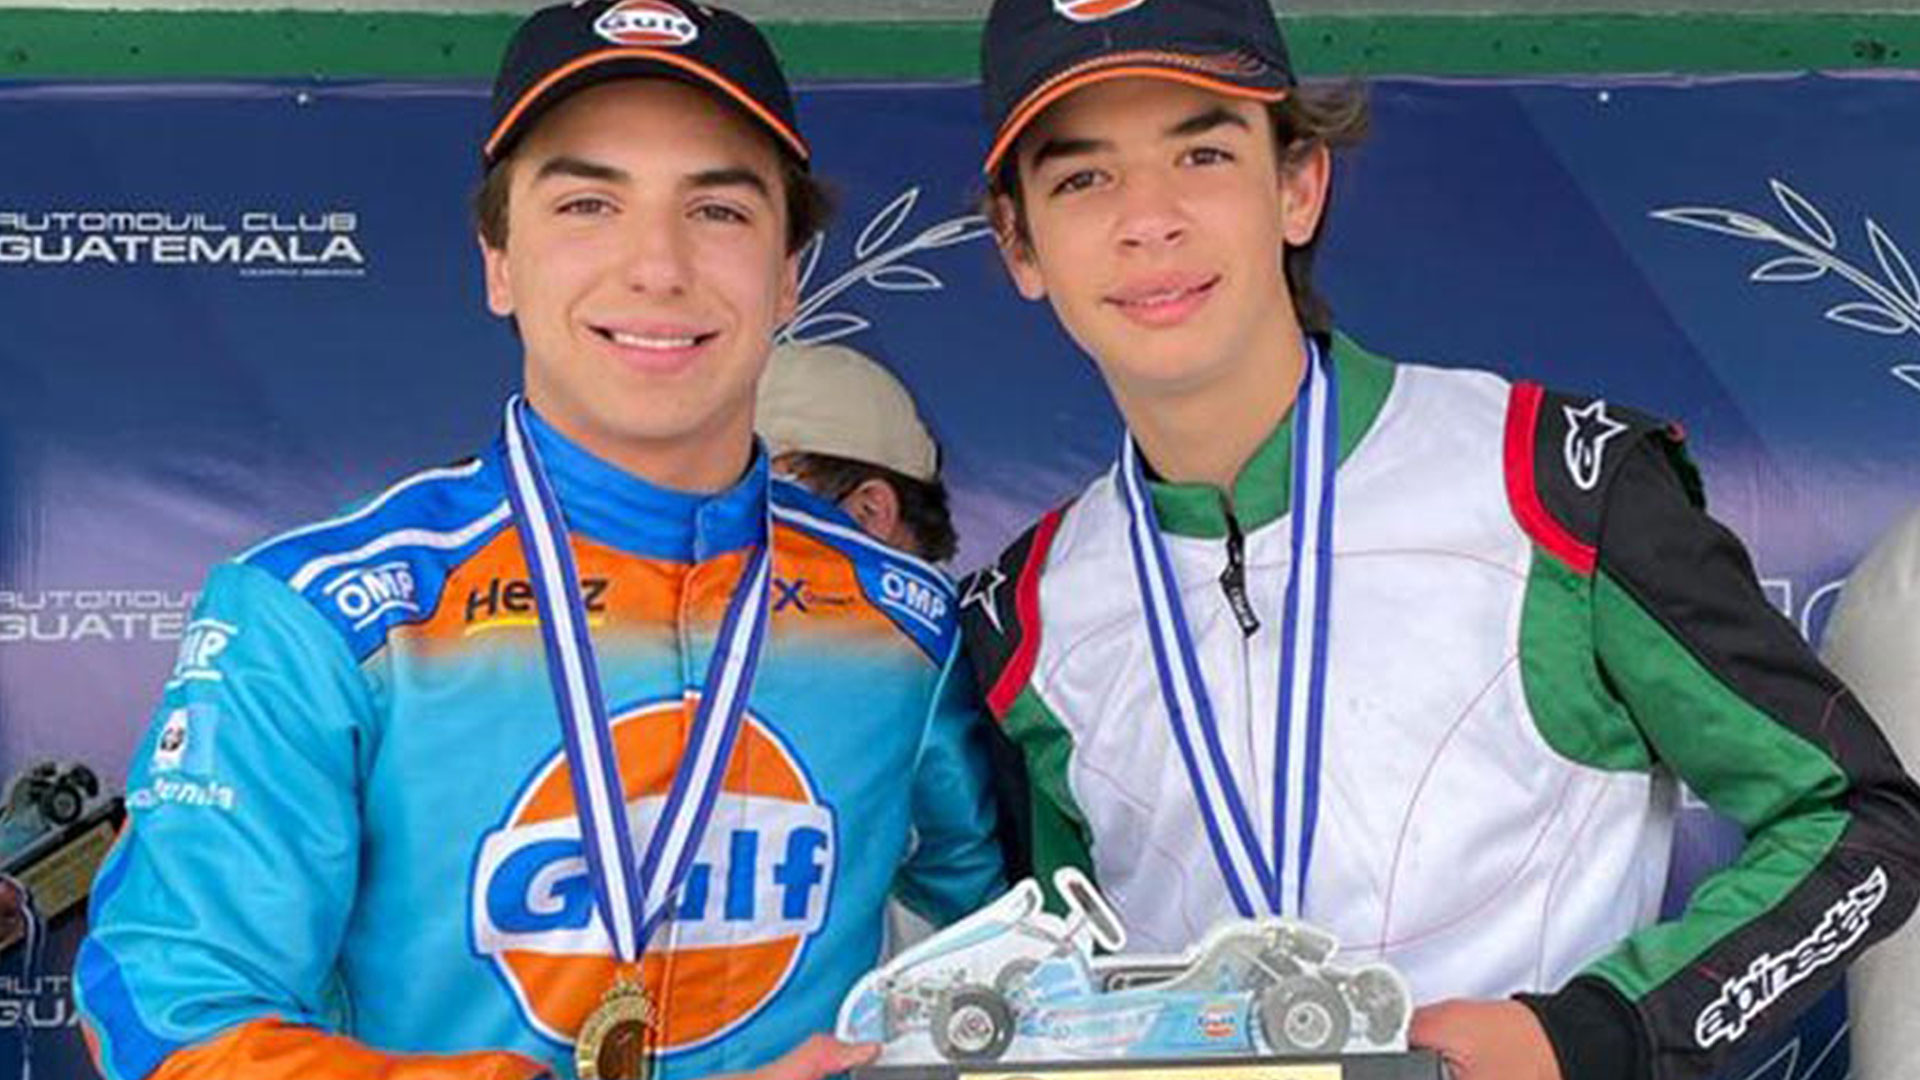 Los pilotos Mateo Llarena y José David Cuestas, de 17 y 15 años posan junto al trofeo de la competencia. (Foto Prensa Libre: Cortesía)